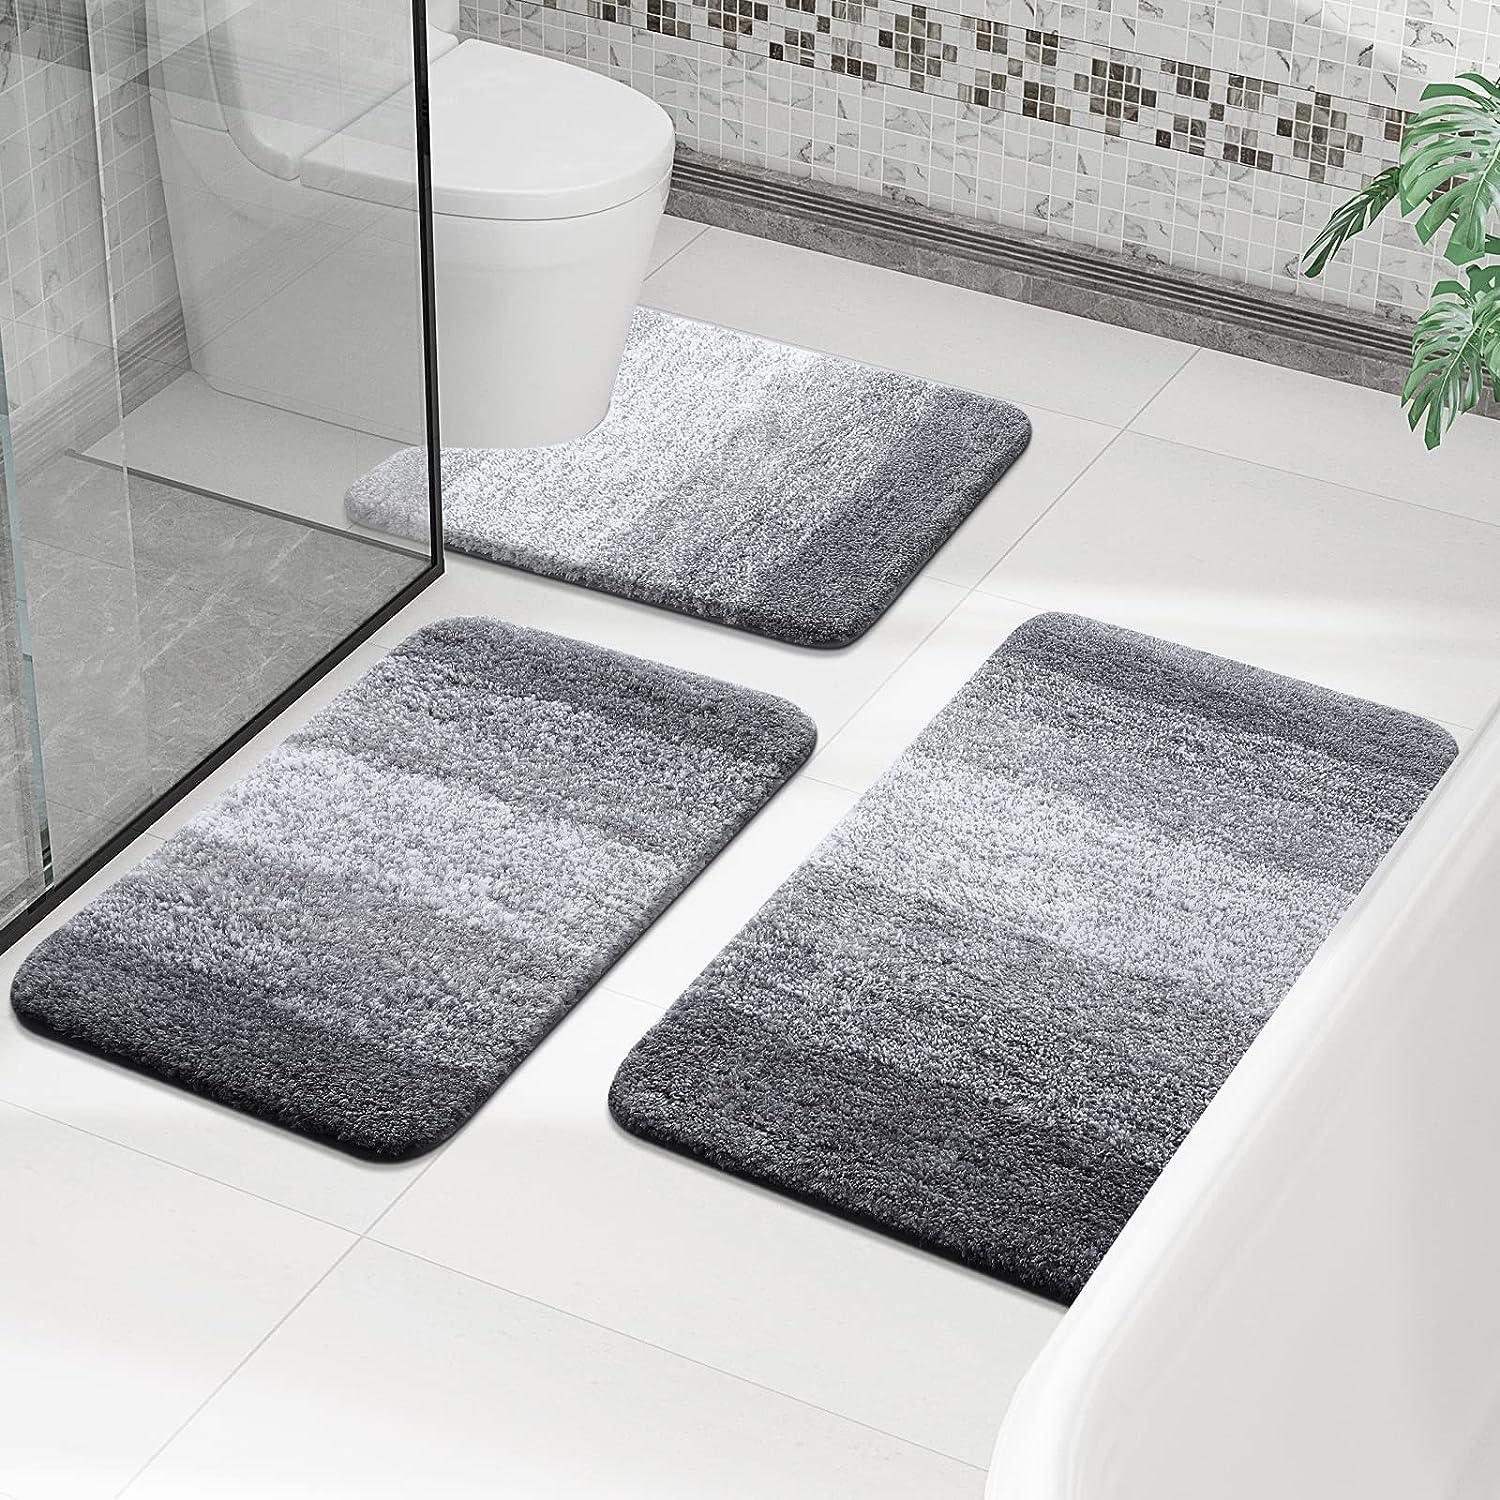  OLANLY - Tapete de baño de aspecto lujoso, tapete de baño hecho  de microfibra extrasuave y ultraabsorbente, tapete de cerdas largas para el  baño, antideslizante, esponjoso, para lavar y secar a